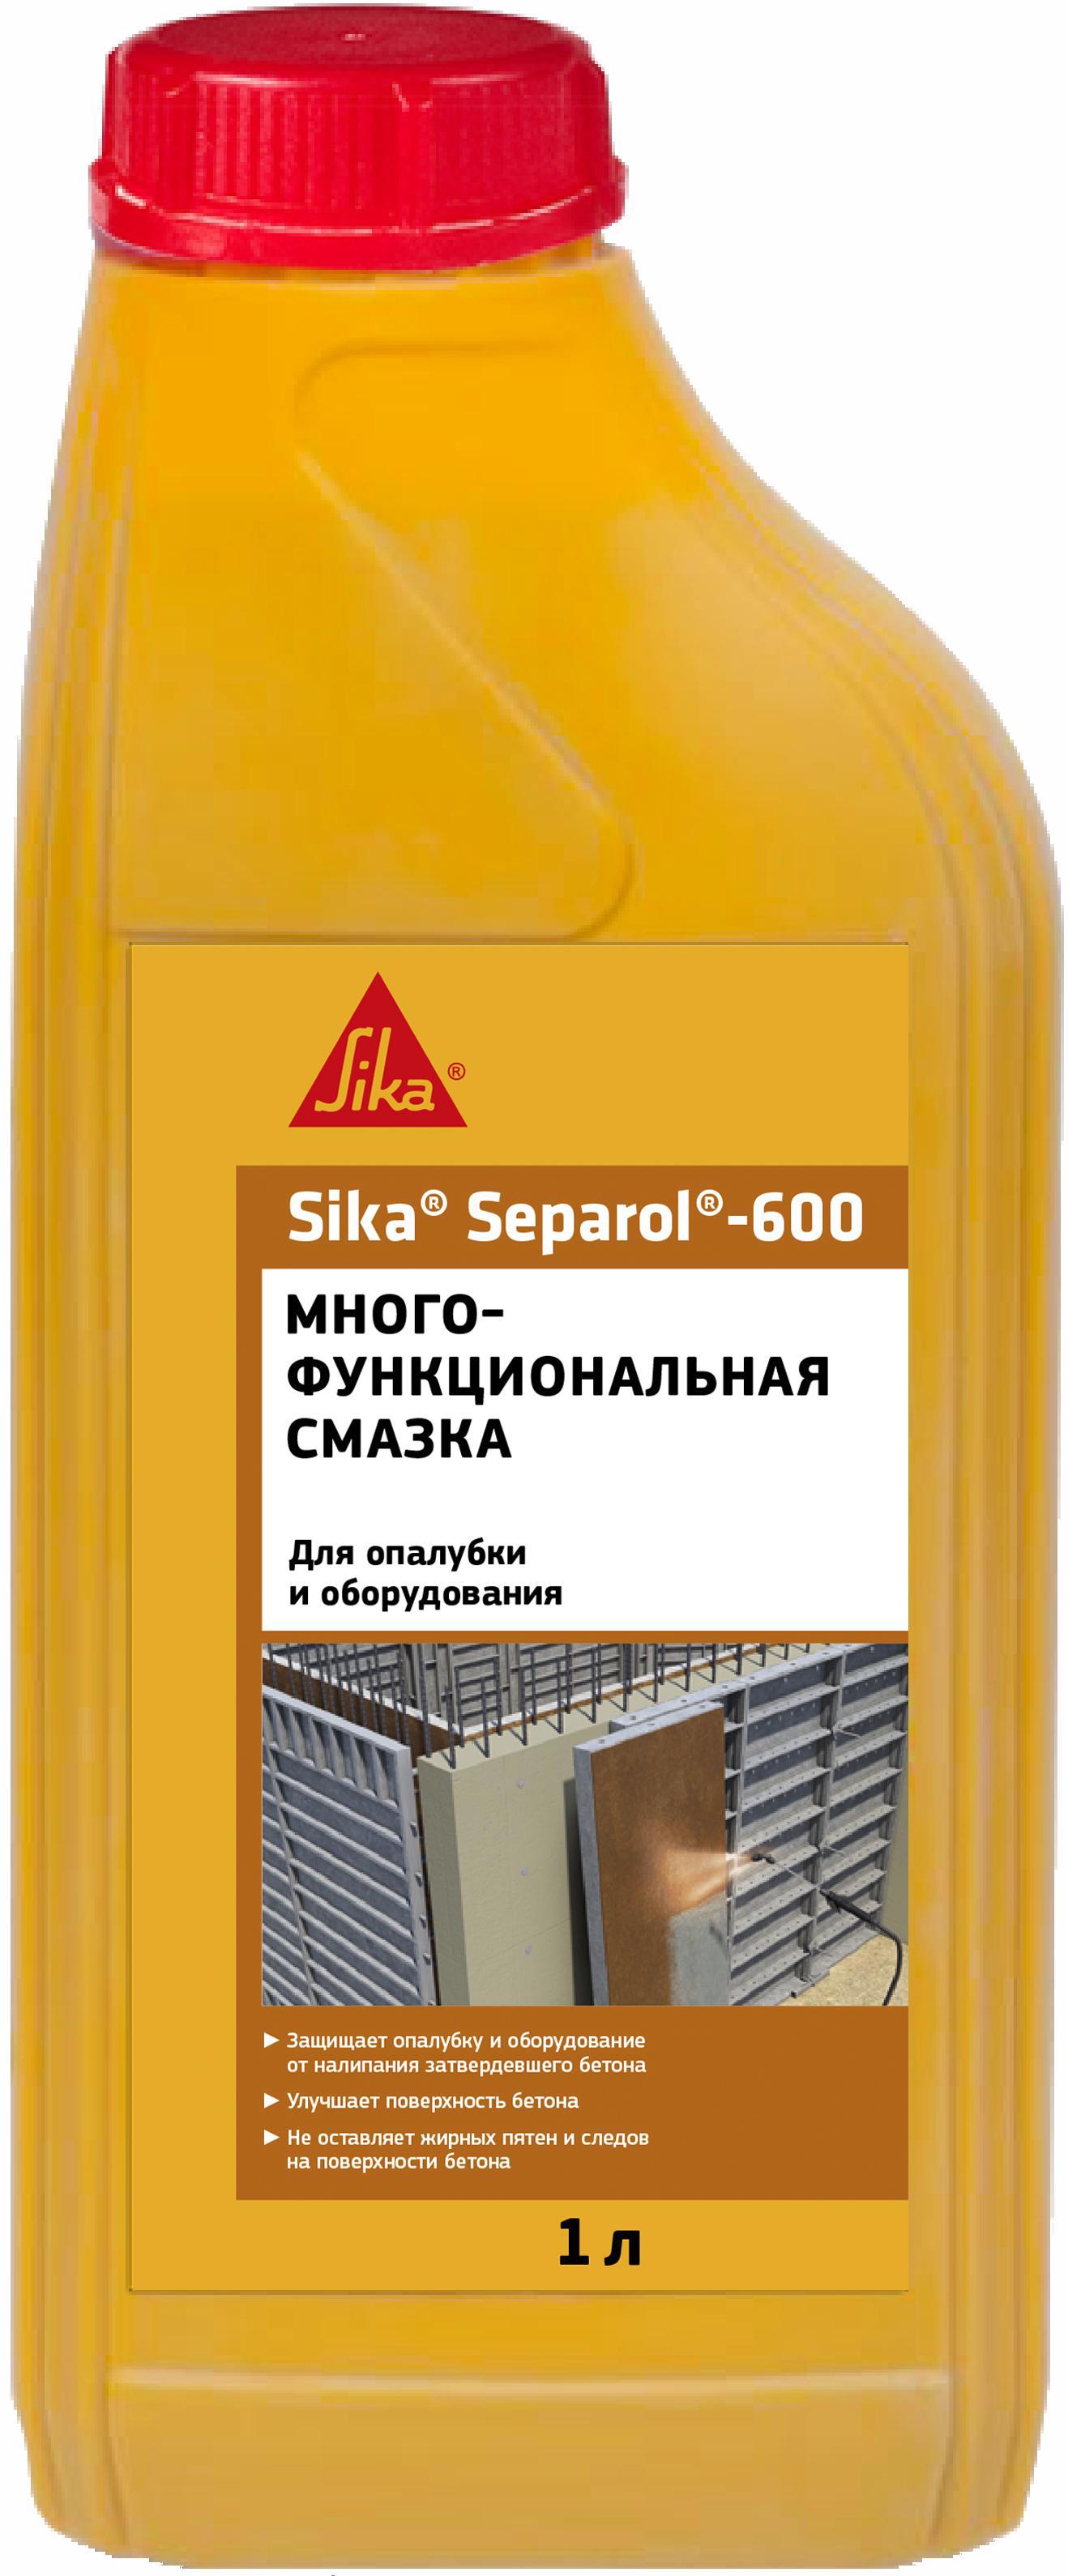  синтетическая Sika Separol-600 для форм и опалубки 1 л ️  .